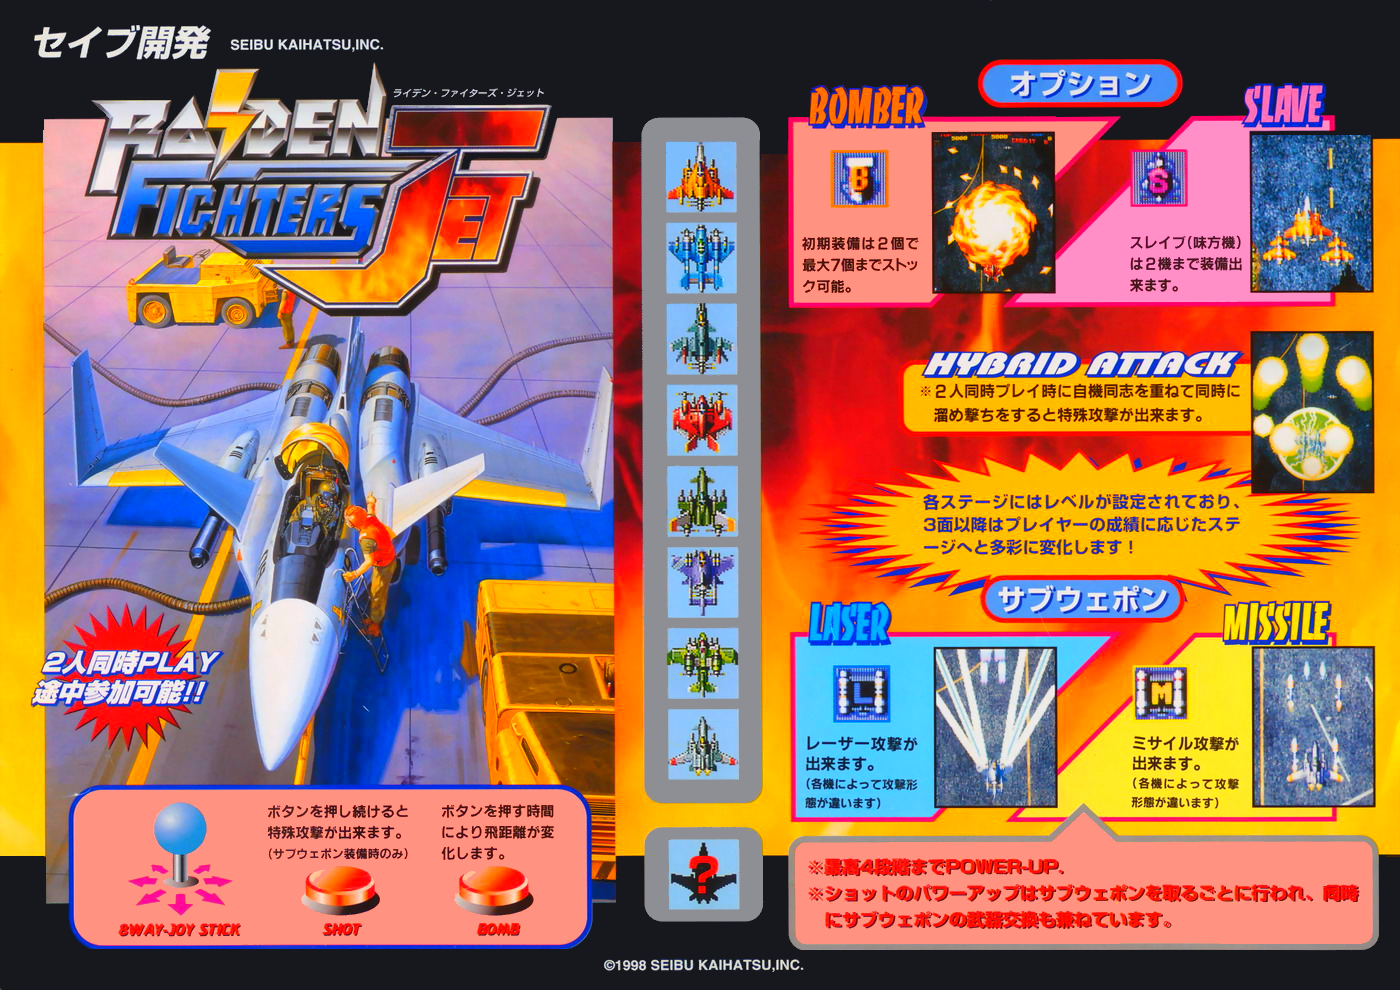 Raiden Fighters Jet (US, single board) flyer